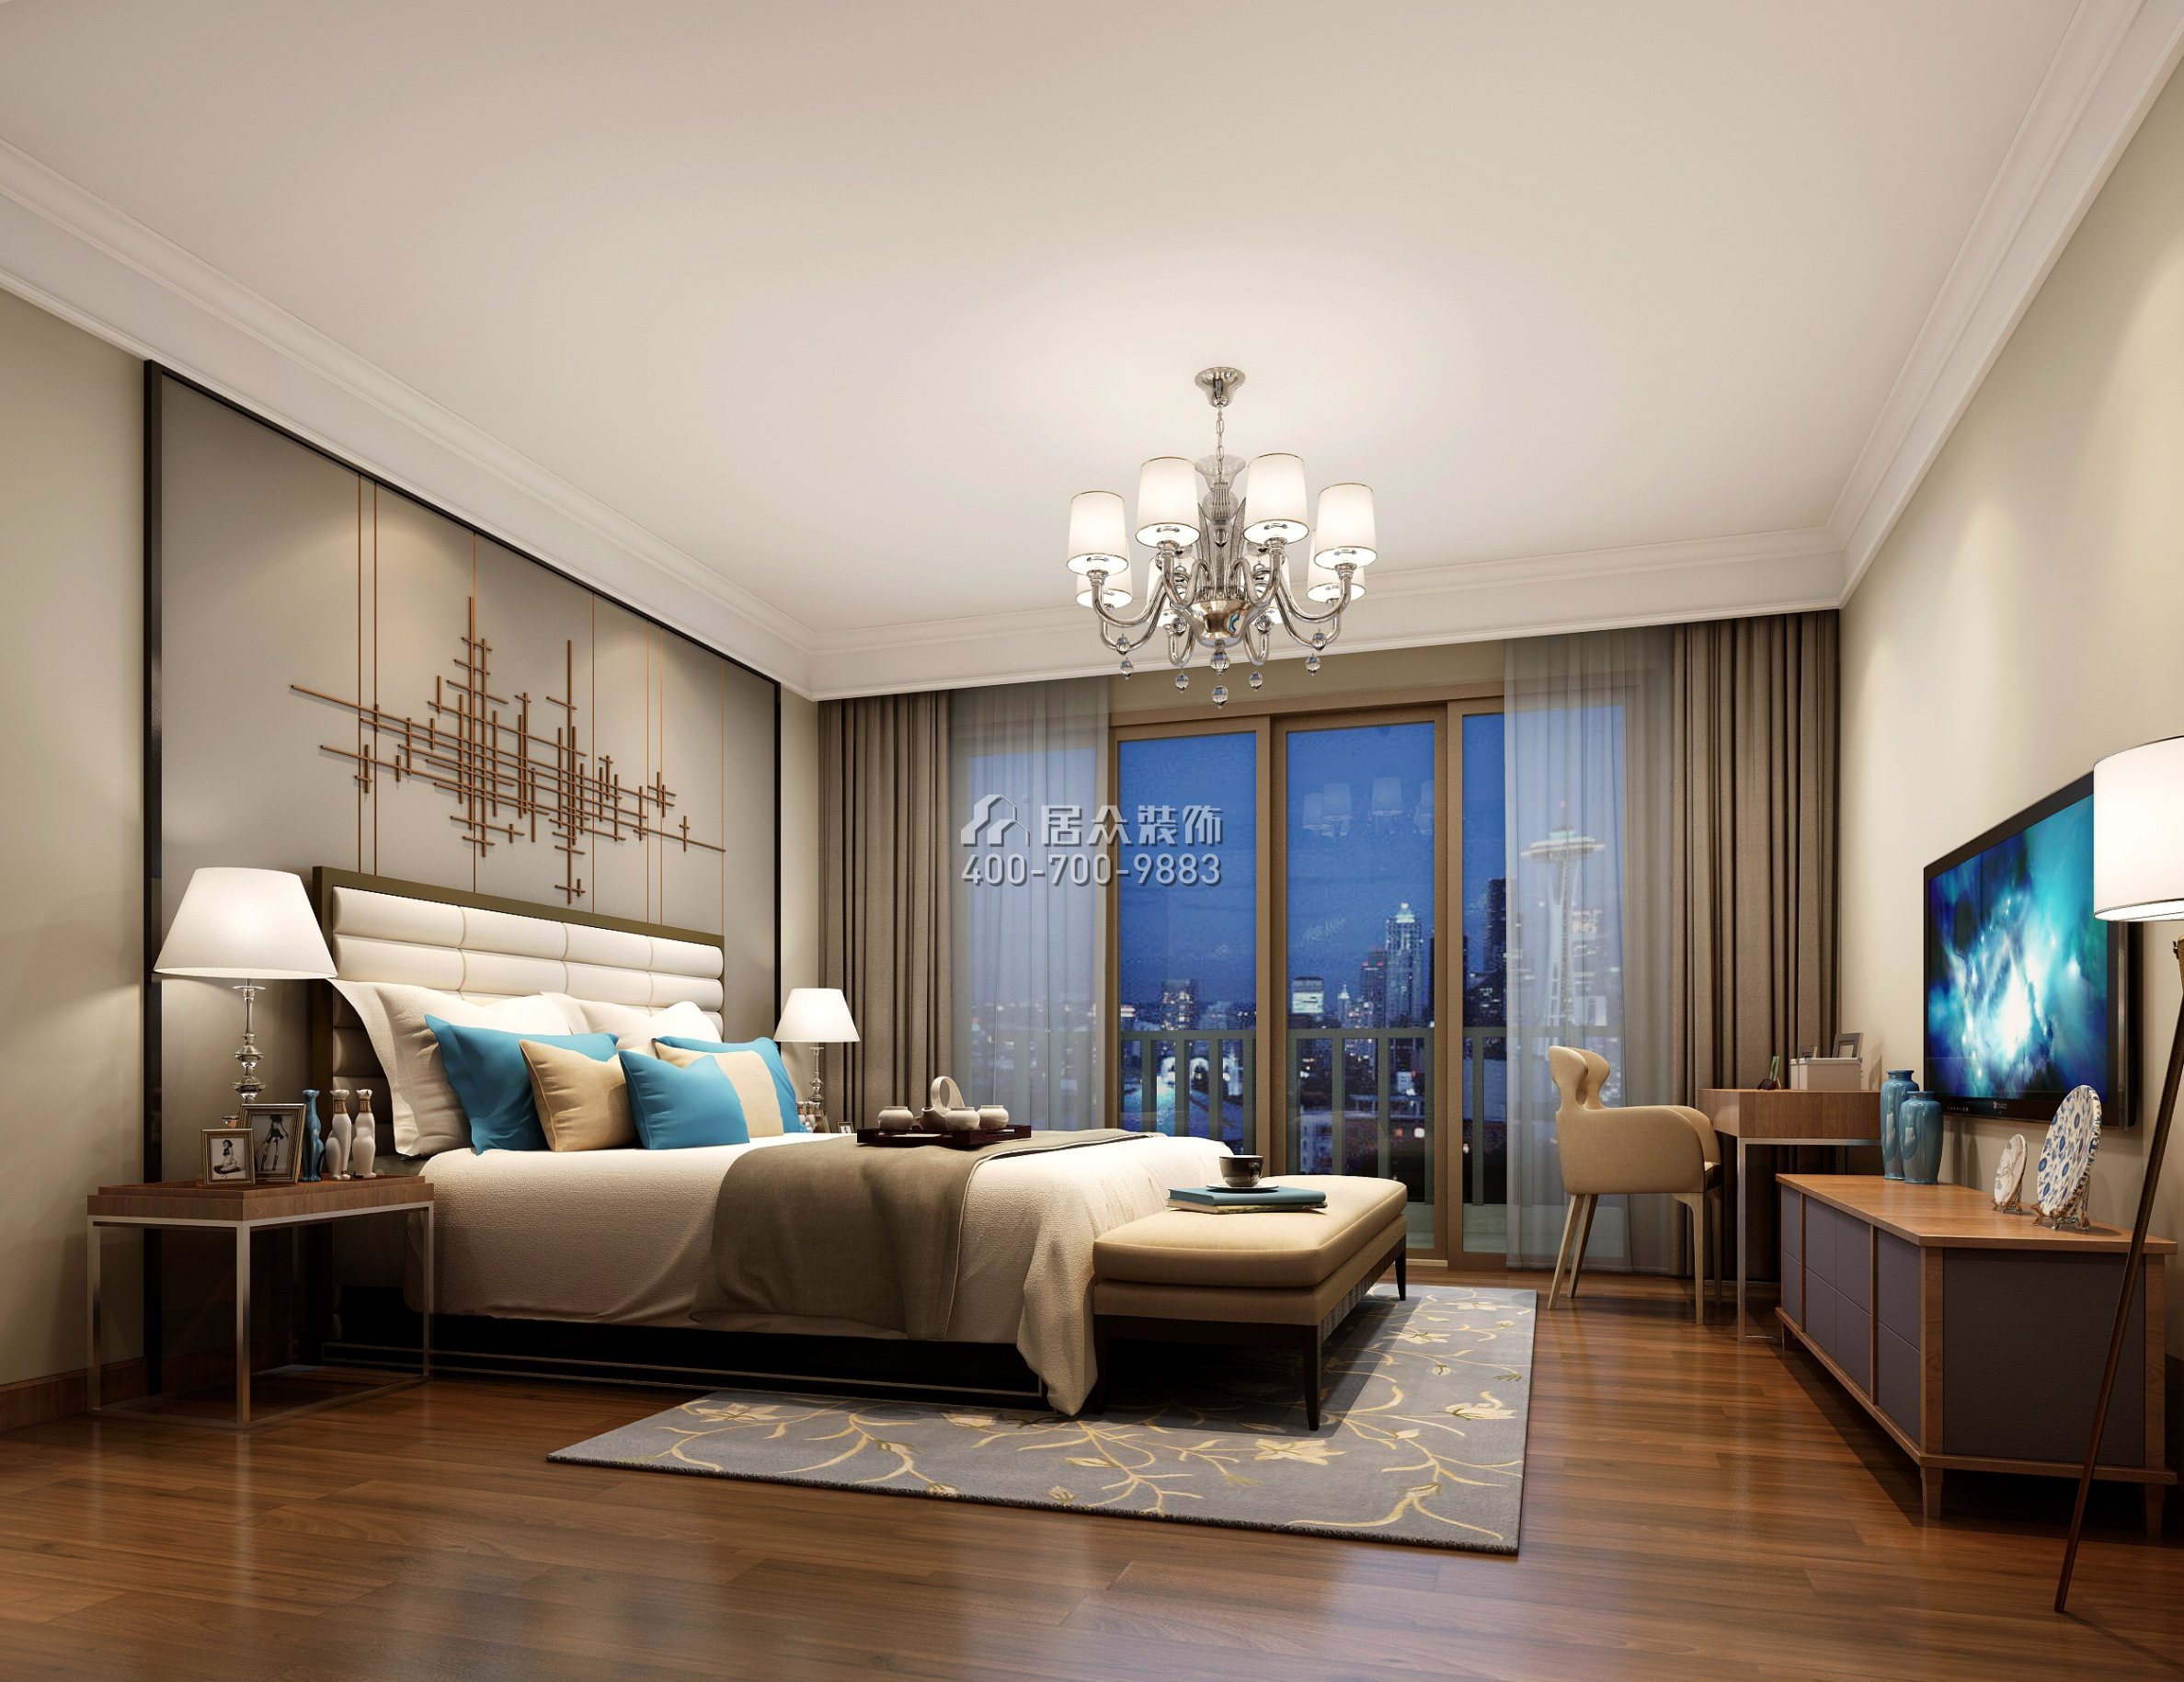 海逸豪庭126平方米现代简约风格复式户型卧室装修效果图